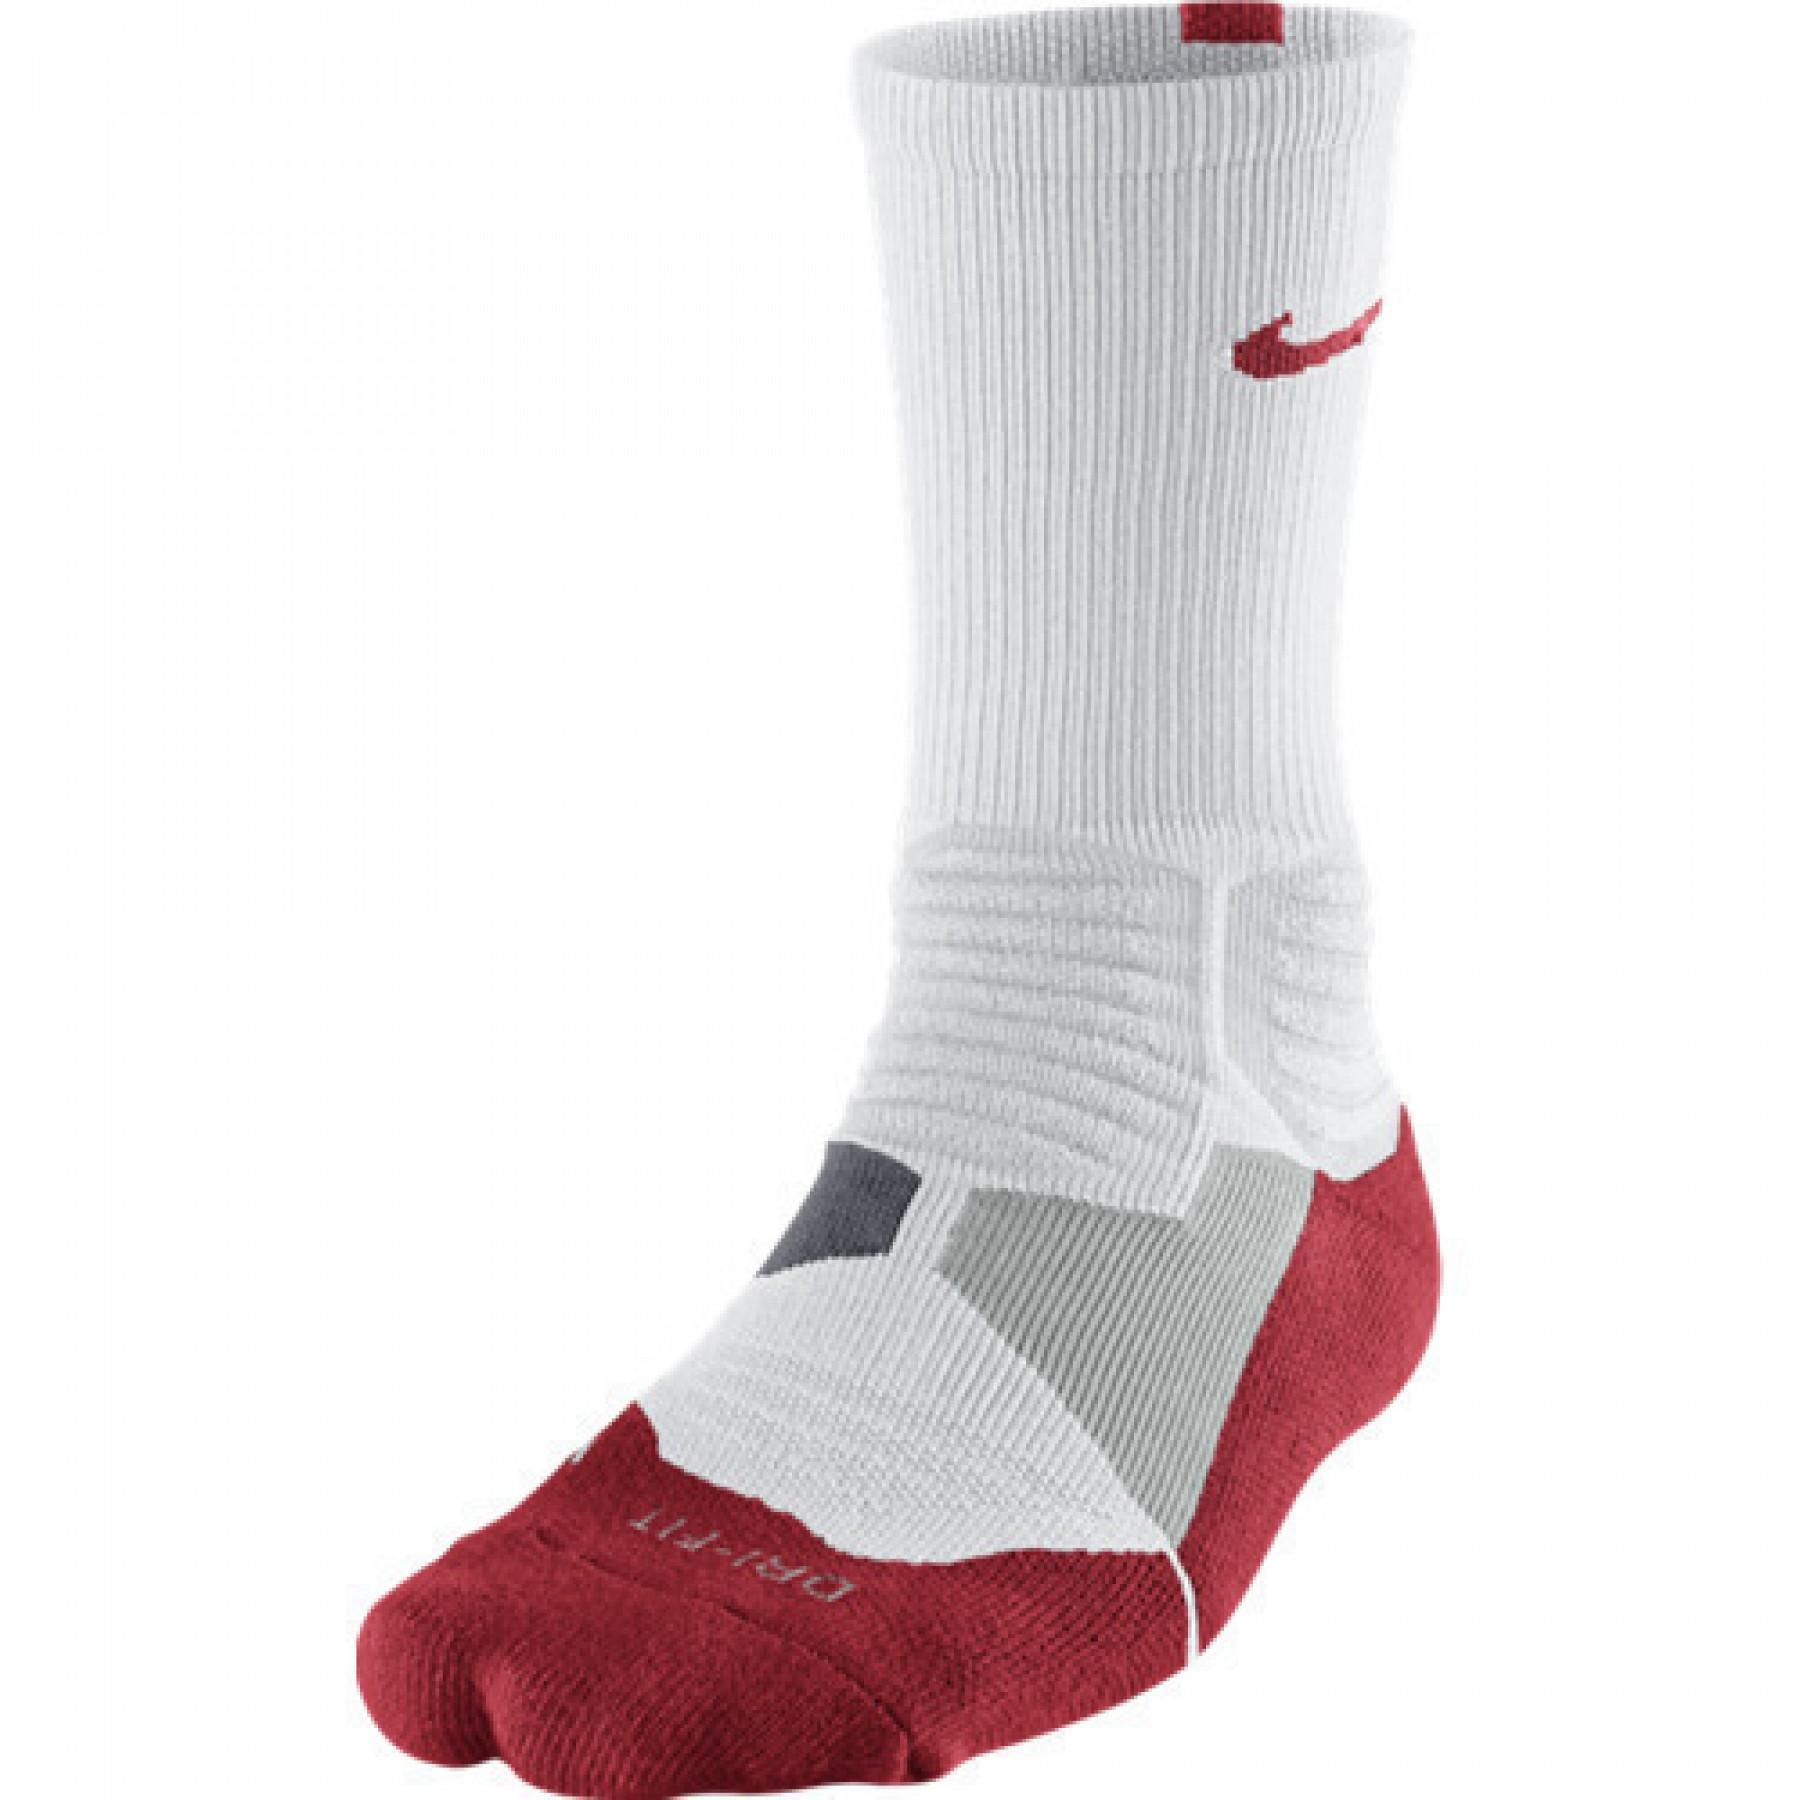 Socken Nike Hyperelite